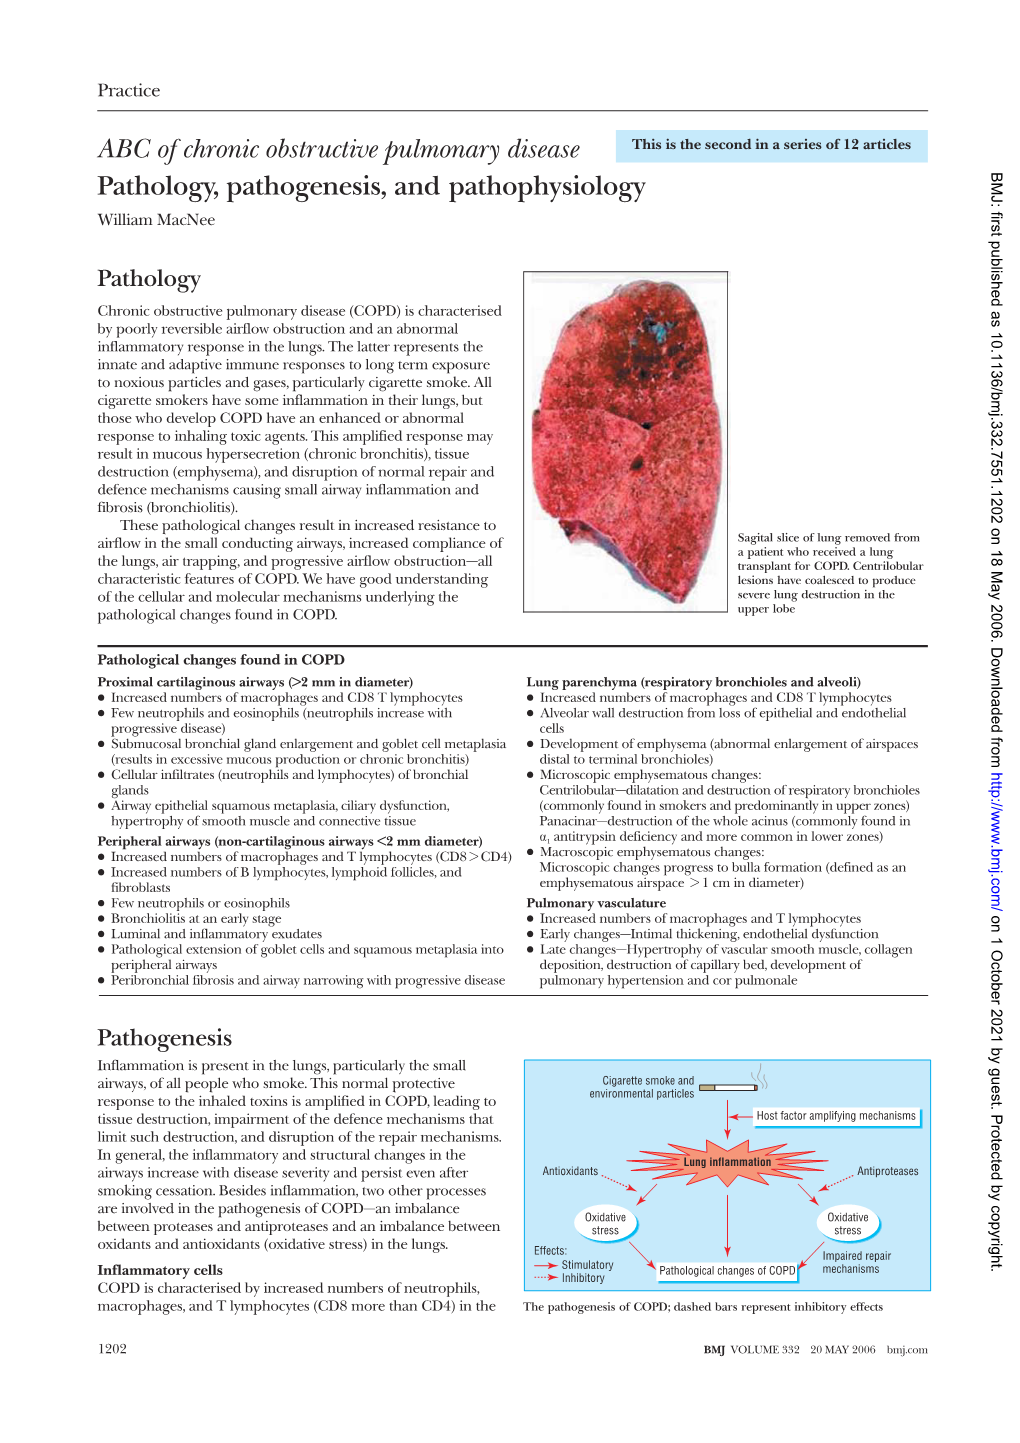 ABC of Chronic Obstructive Pulmonary Disease Pathology, Pathogenesis